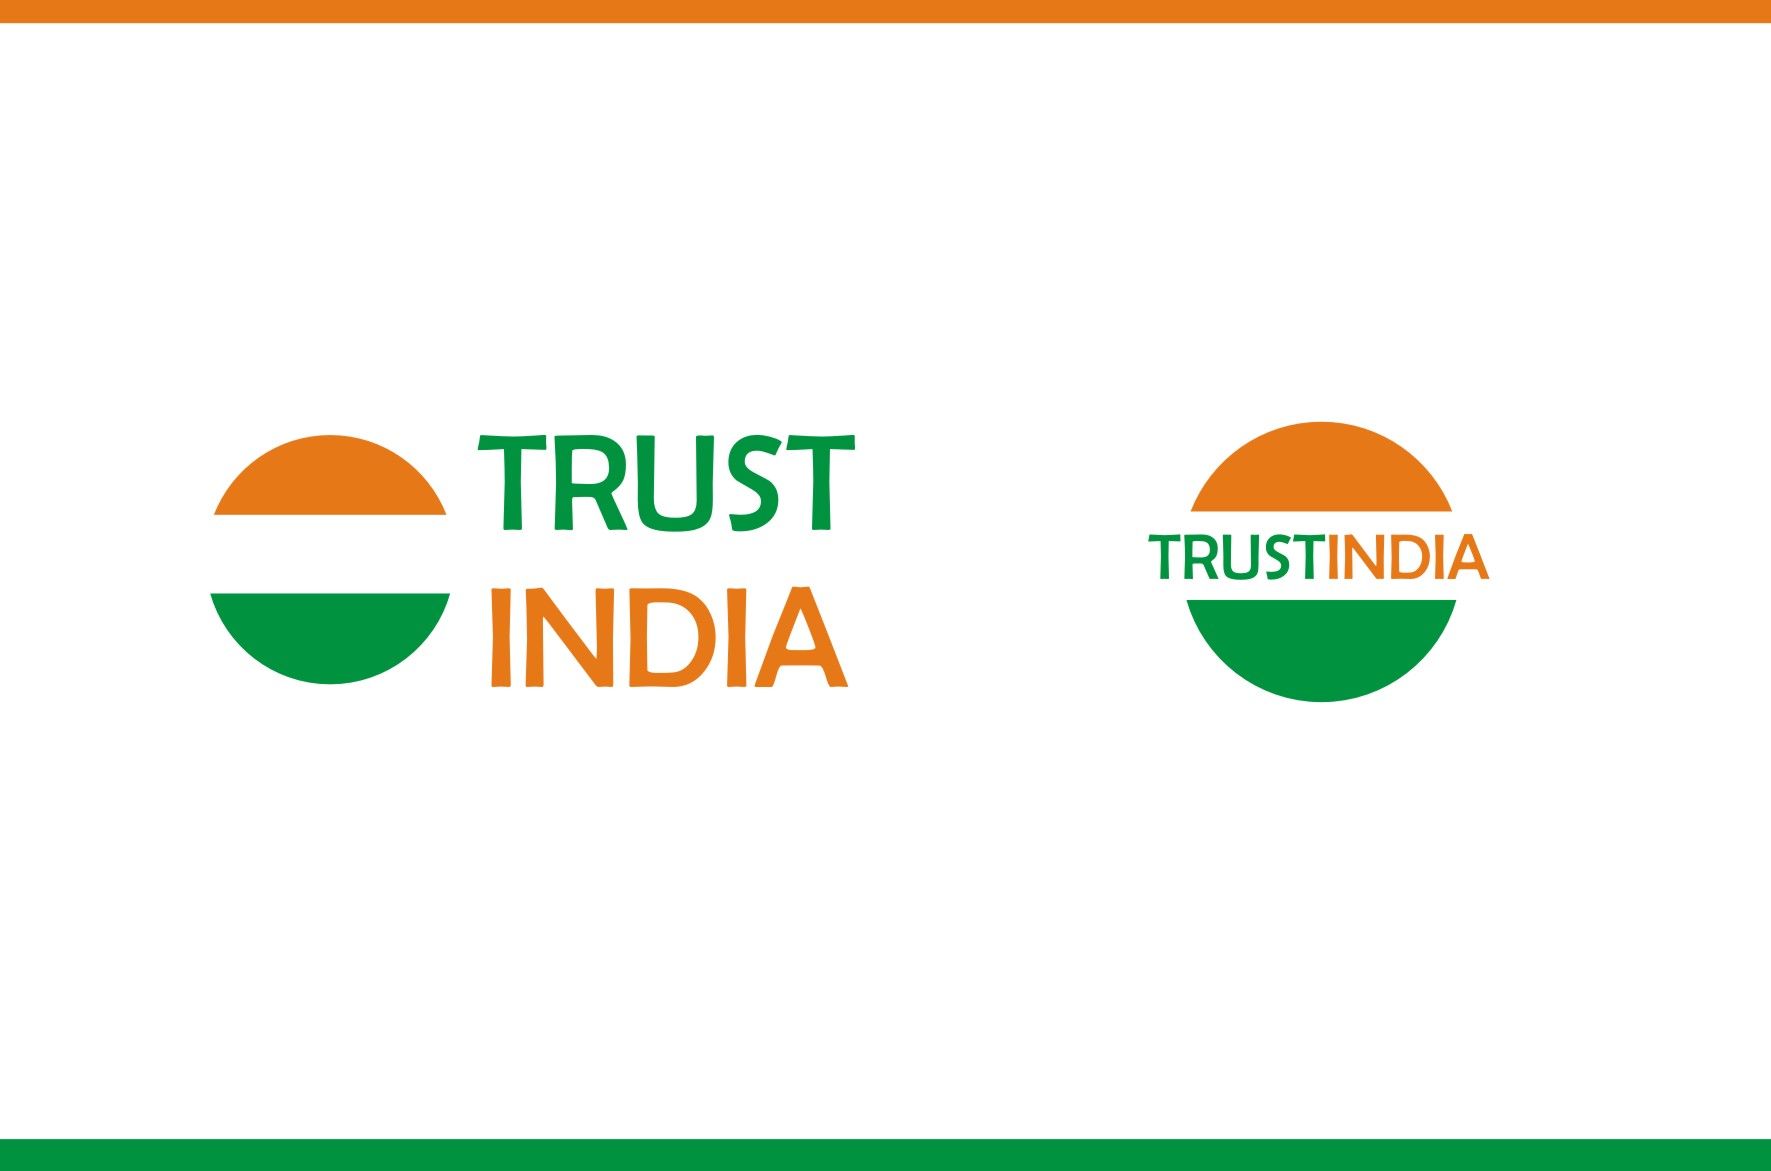 Логотип сайта об Индии, инд. товарах, здоровье - дизайнер Zero-2606